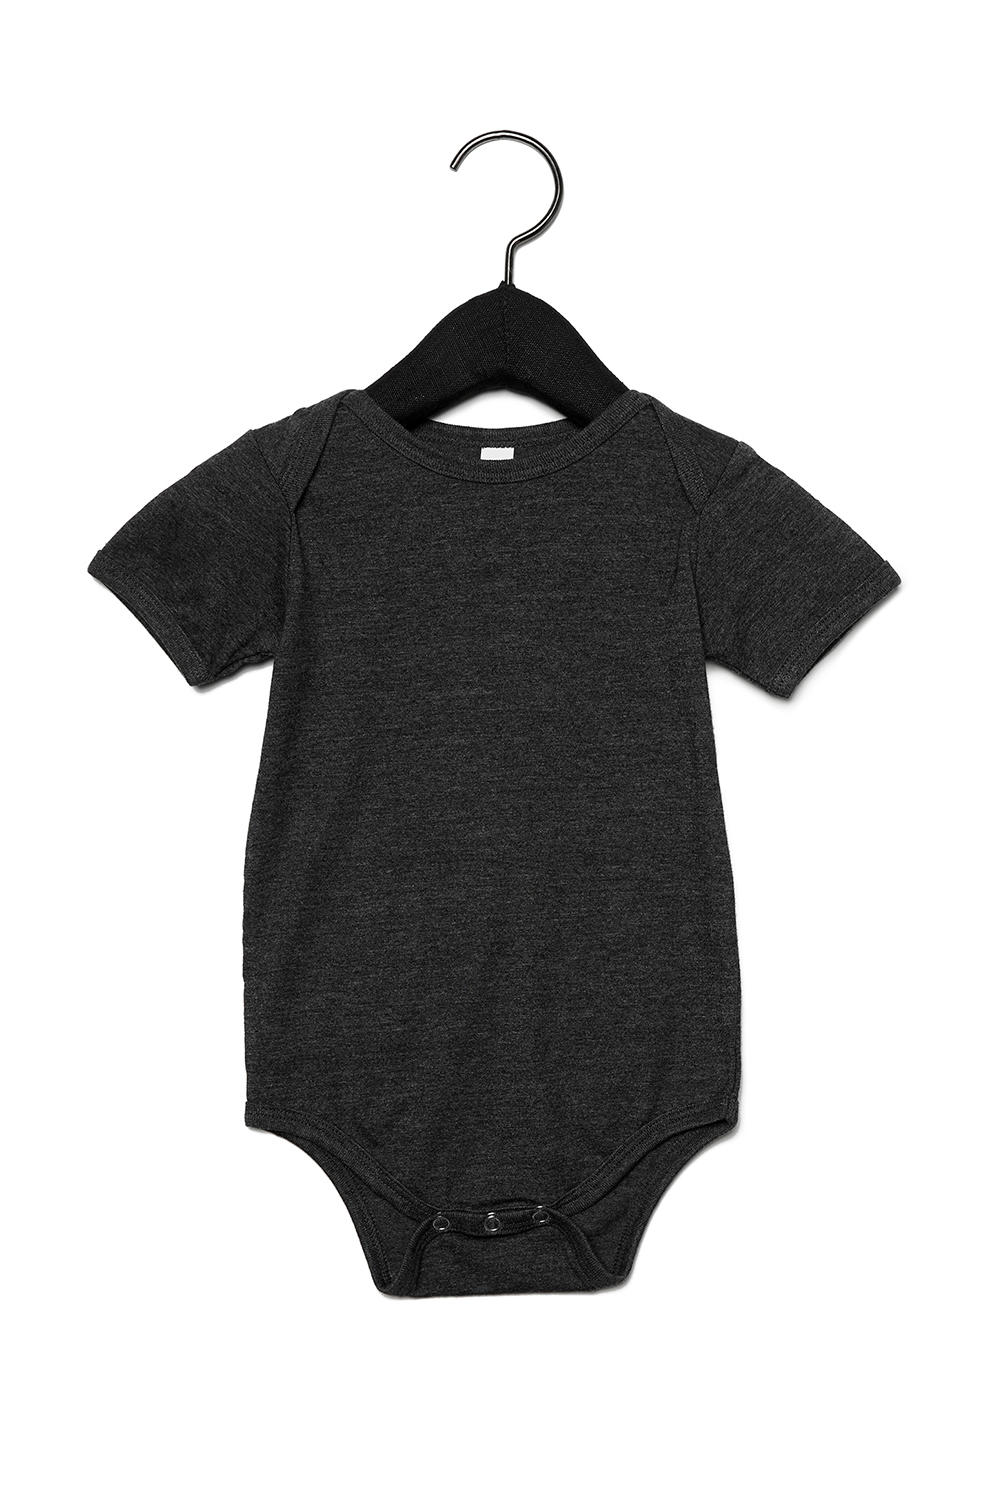  Baby Jersey Short Sleeve One Piece in Farbe Dark Grey Heather